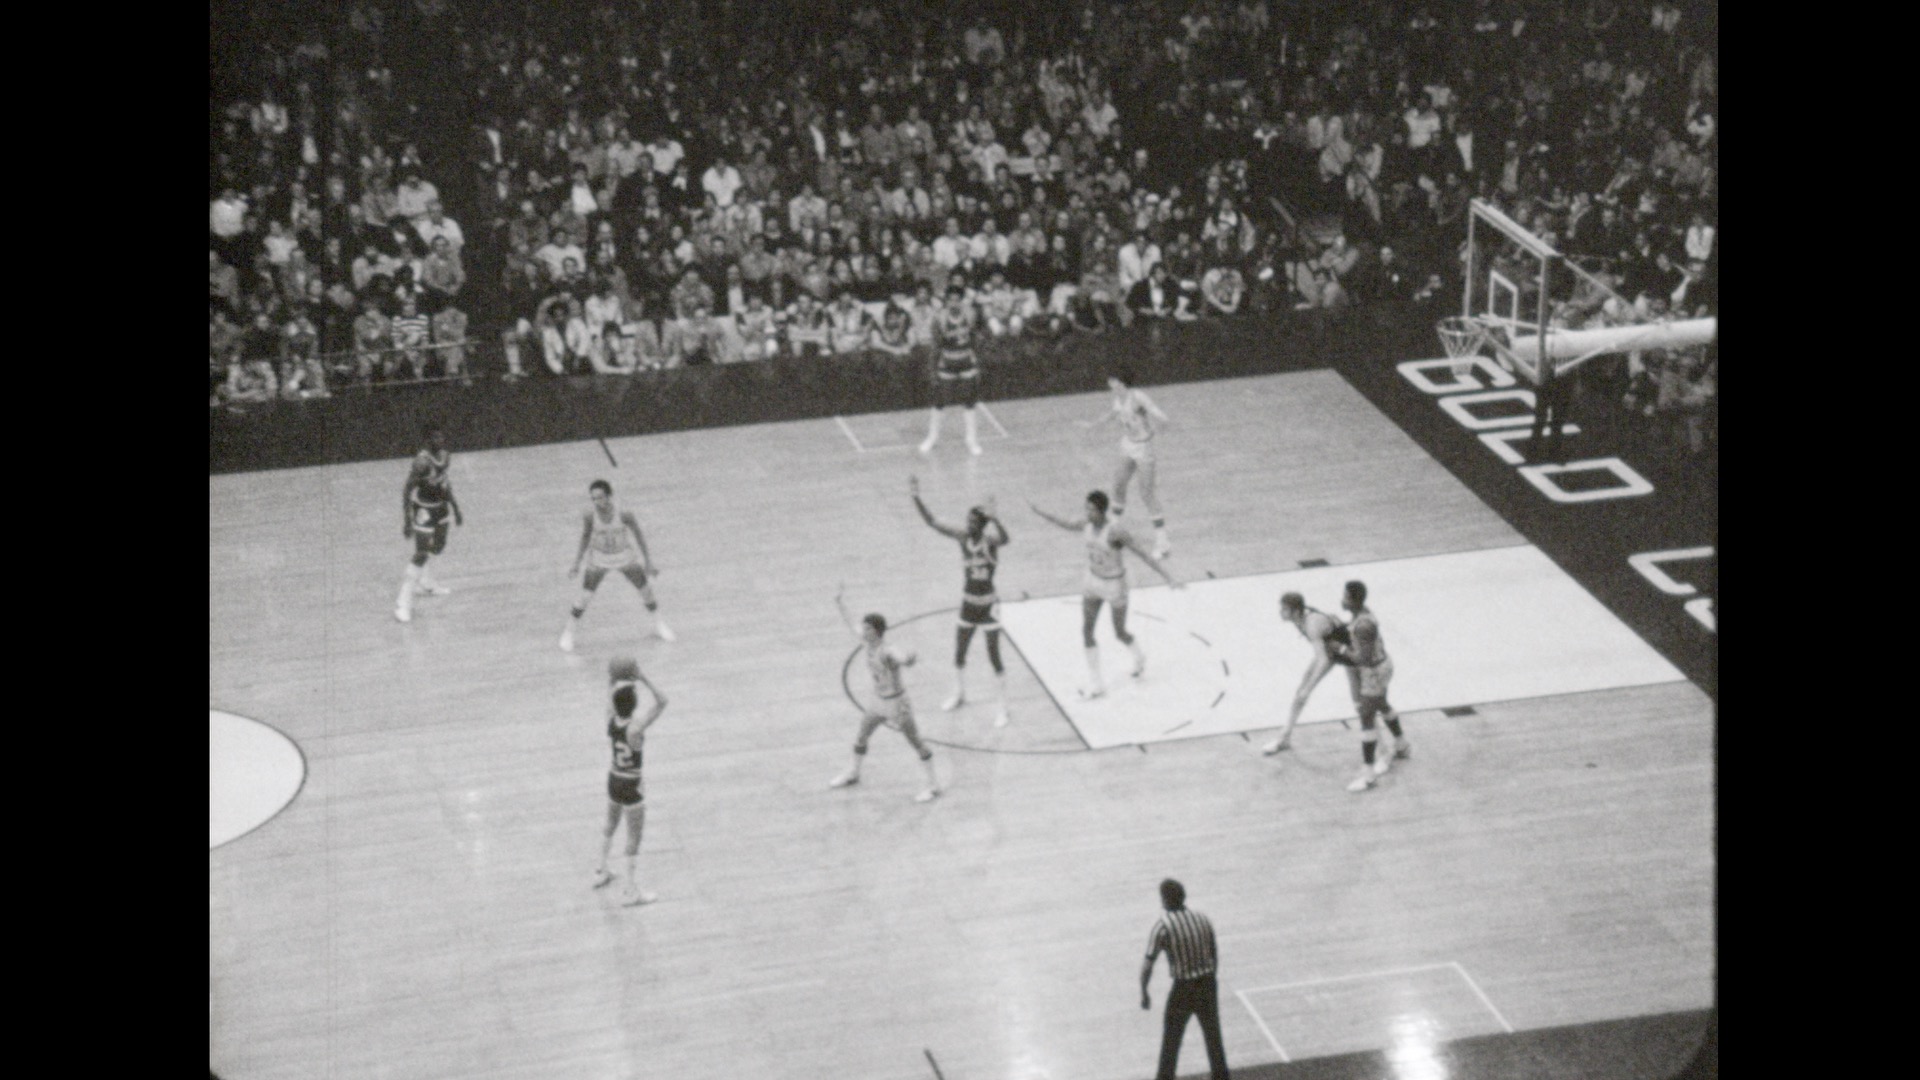 MSU Basketball vs. Minnesota (away), 1977